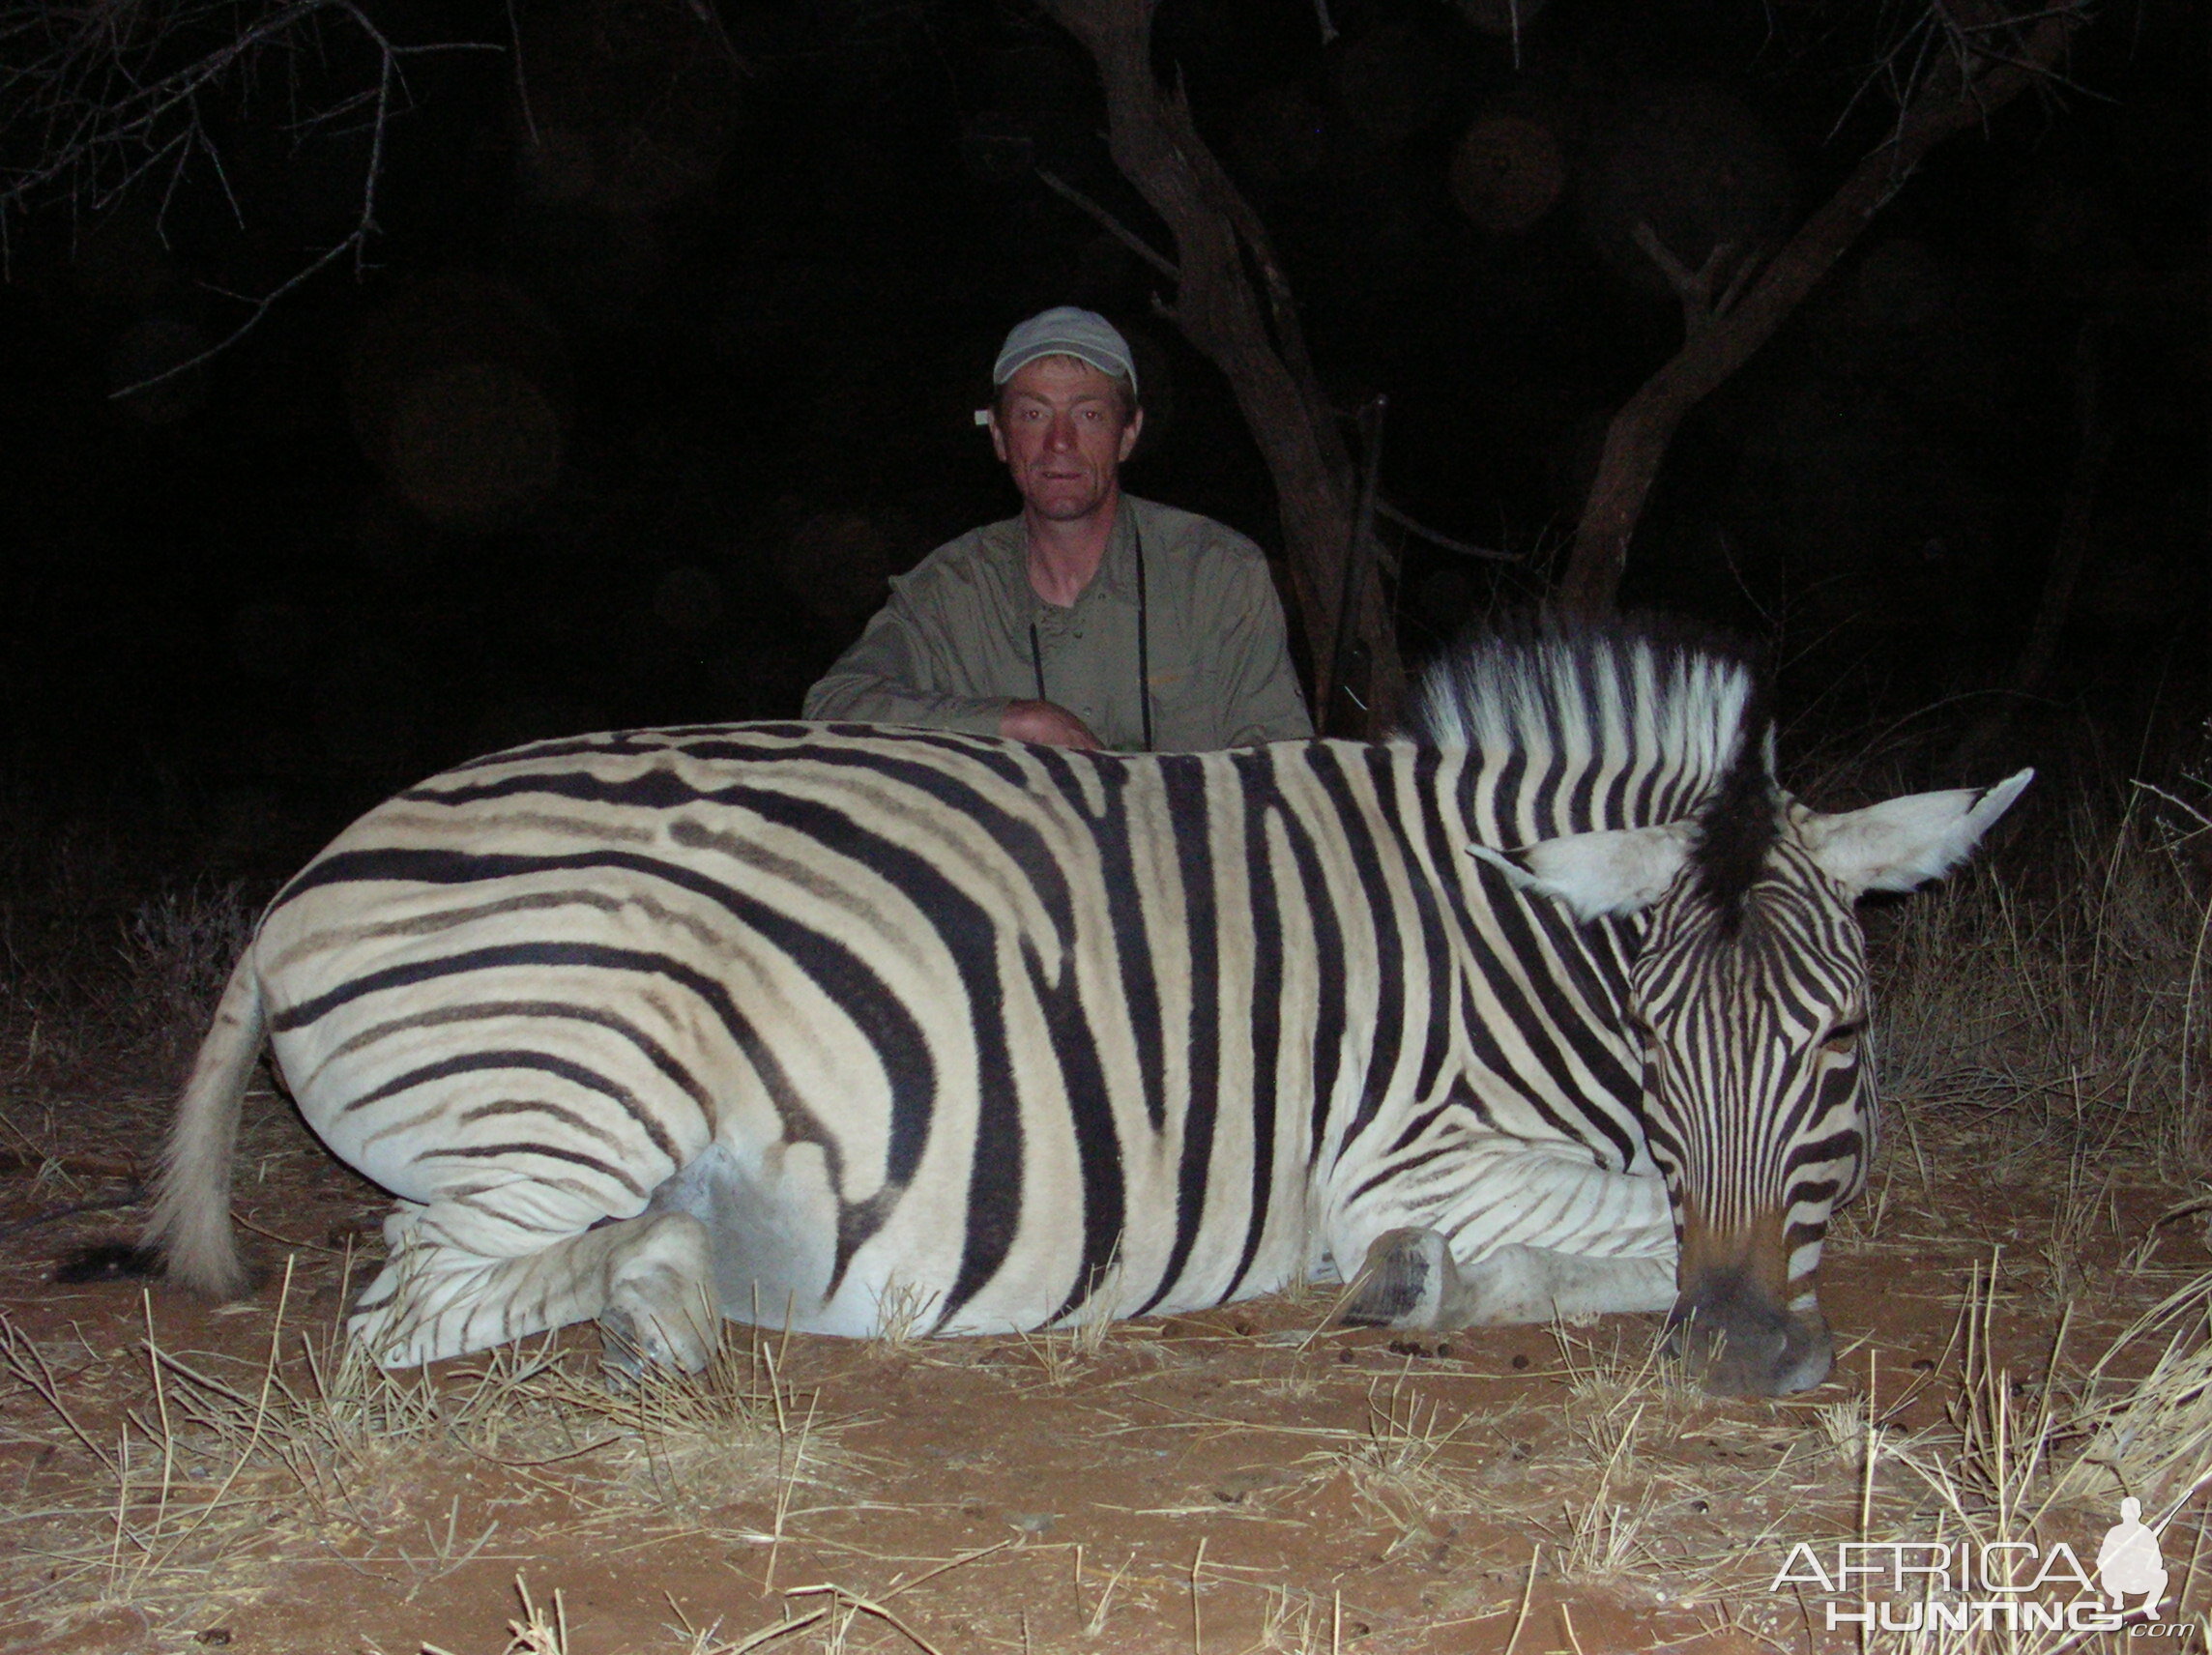 Hunting Burchell's Plain Zebra in Namibia